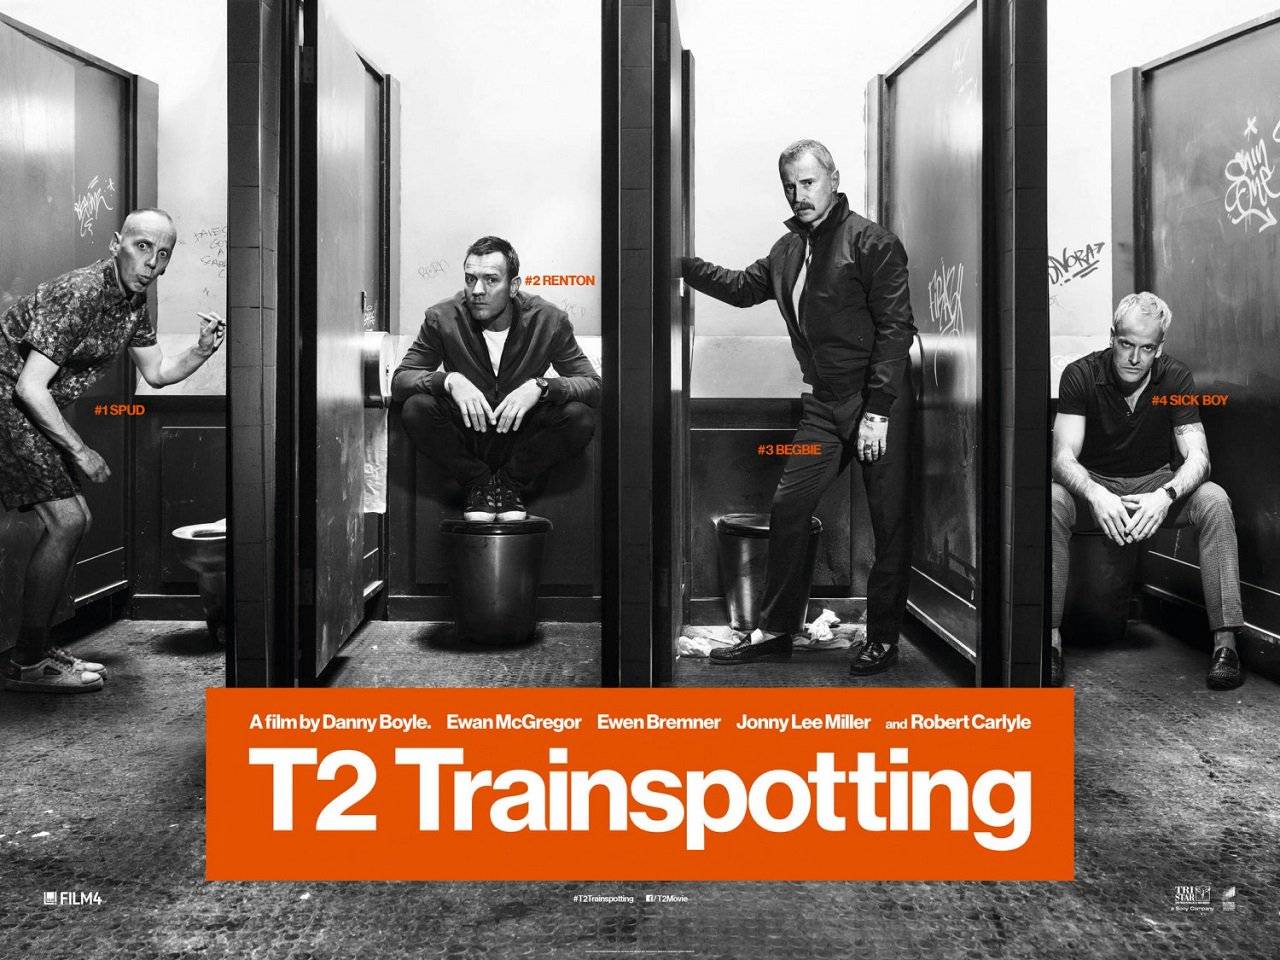 T2 Trainspotting / T2 Trainspotting (2017)